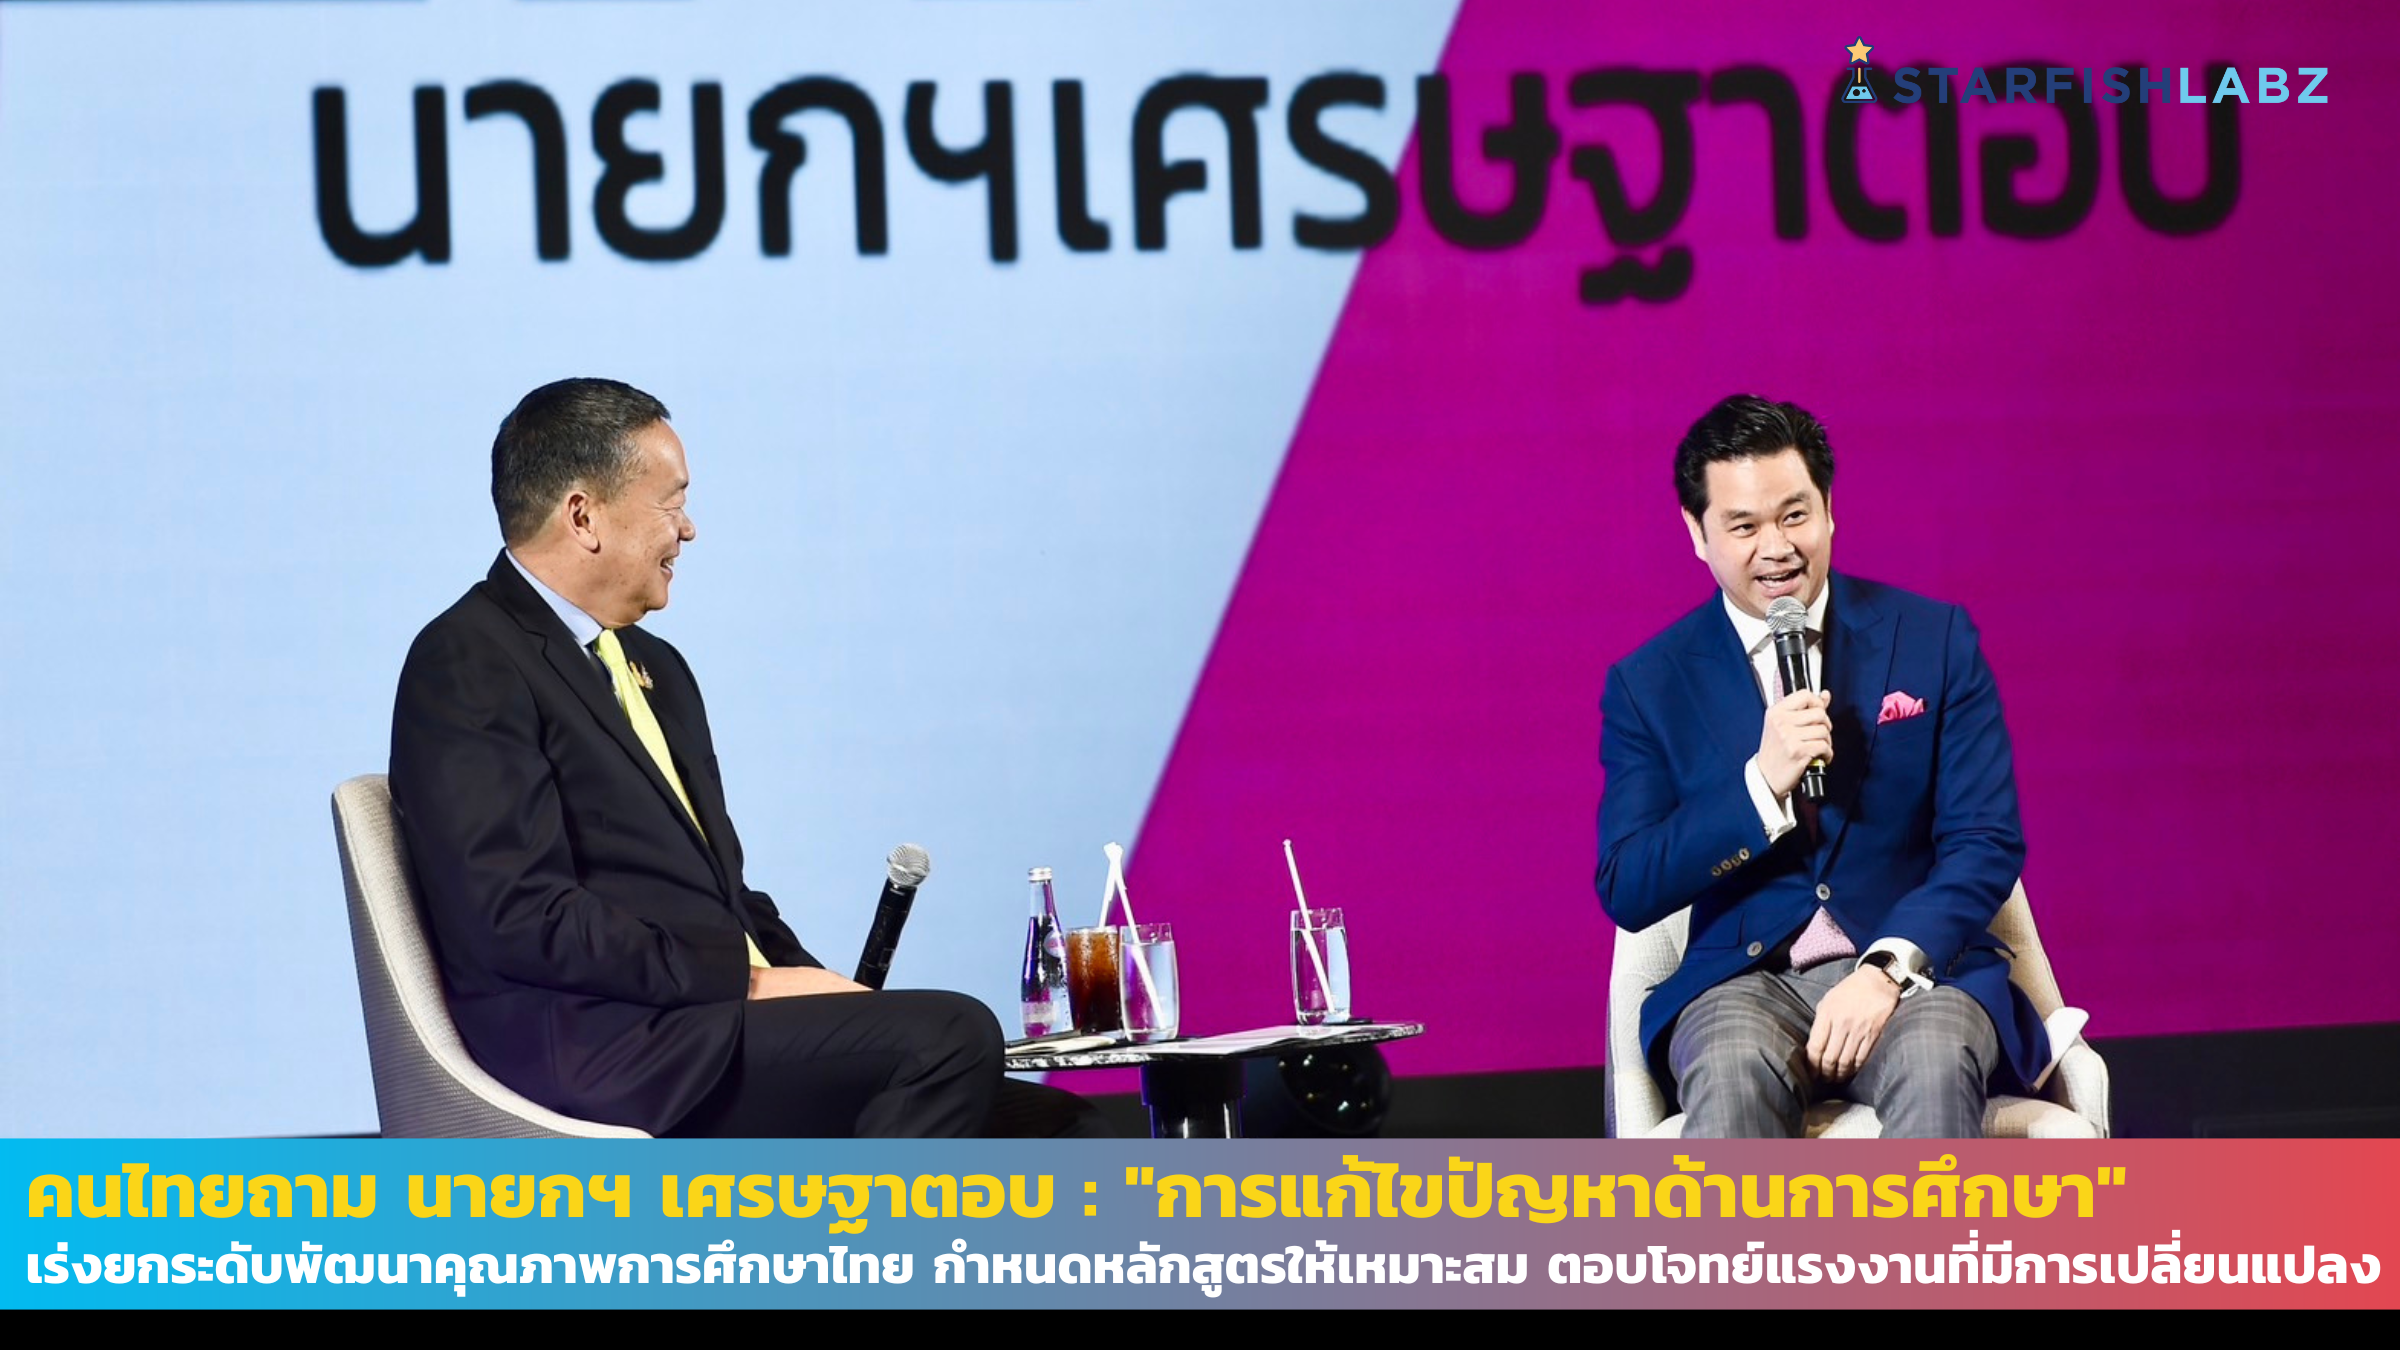 คนไทยถาม นายกฯ เศรษฐาตอบ : "การแก้ไขปัญหาด้านการศึกษา" เร่งยกระดับพัฒนาคุณภาพการศึกษาไทย